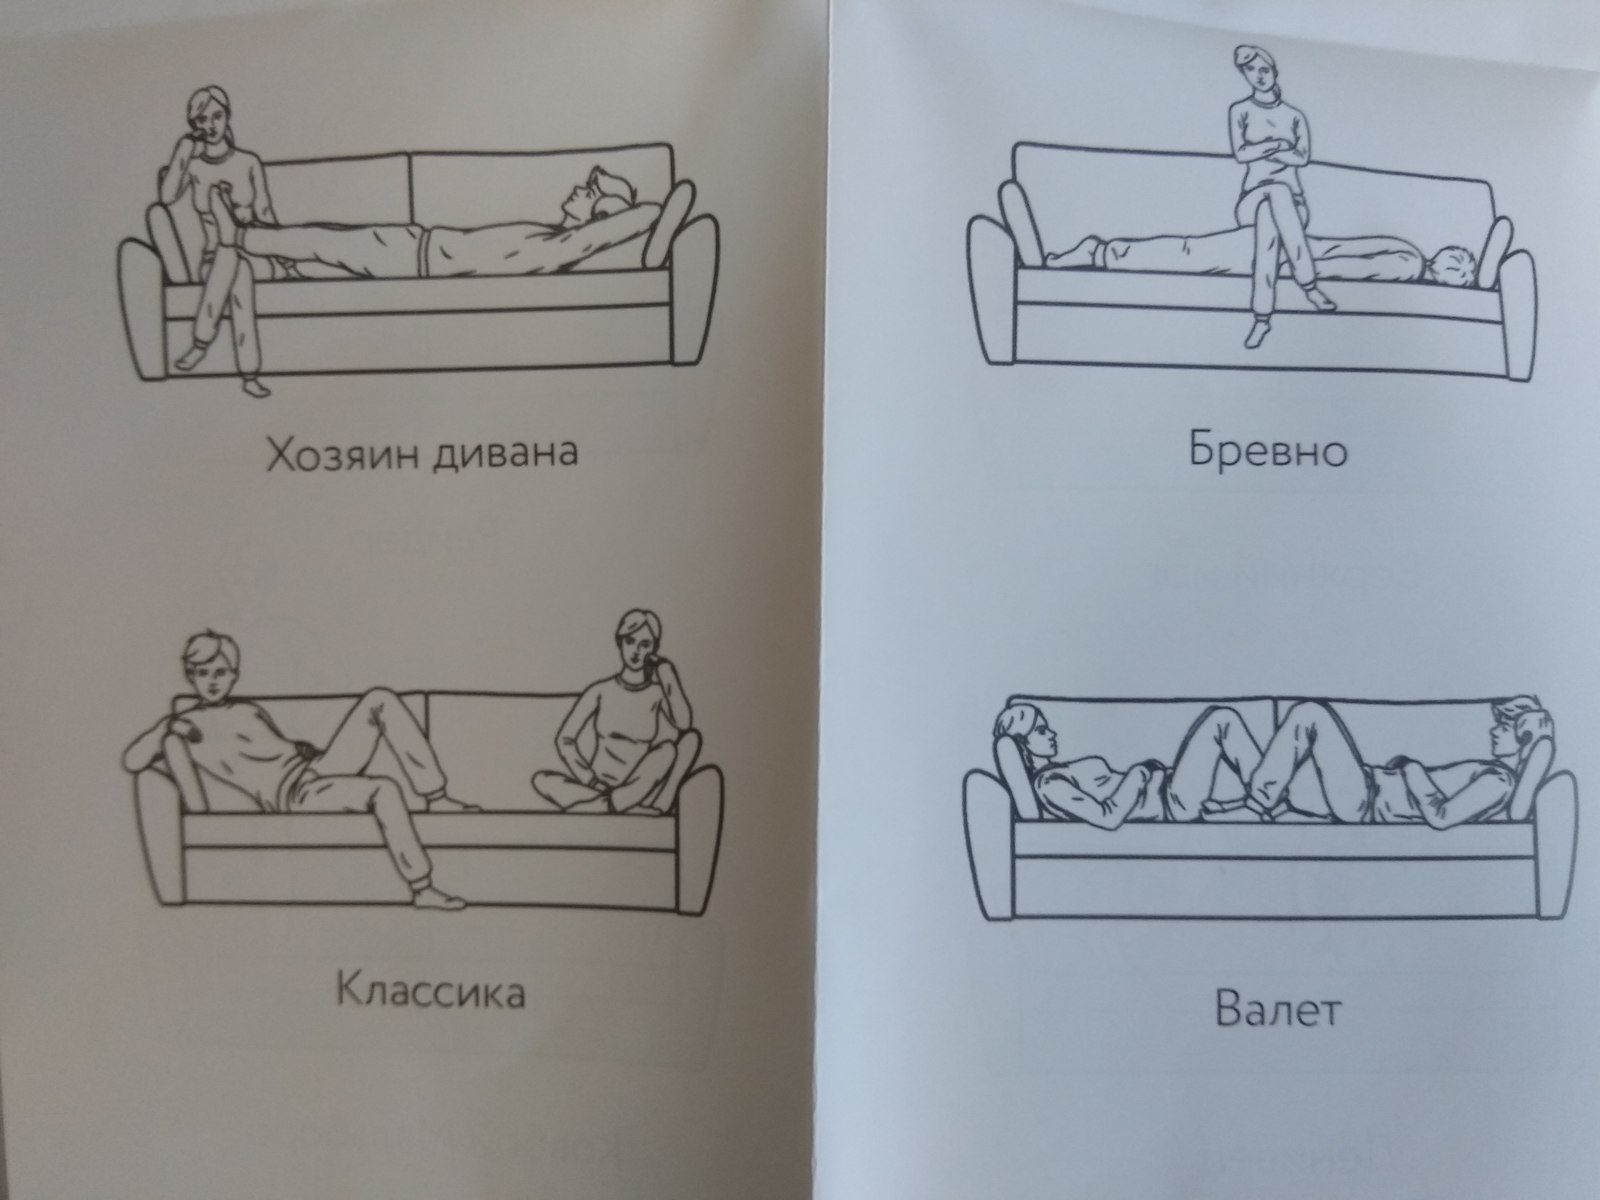 На диване секс бывает разнообразным